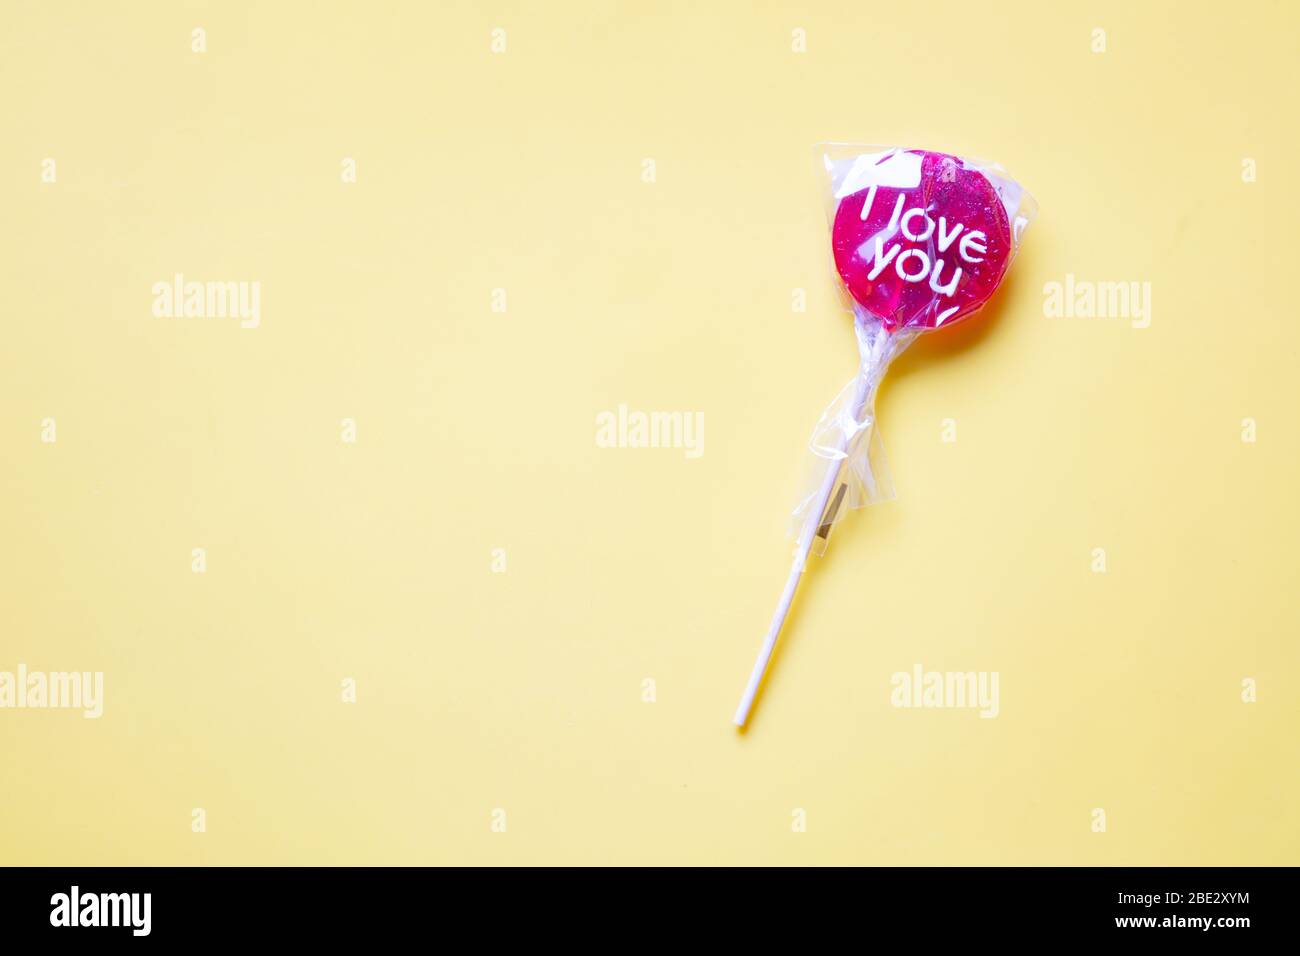 Ein süßes gewickeltes 'I Love You' rotes Lollypop vor einem pastellgelben Hintergrund Stockfoto